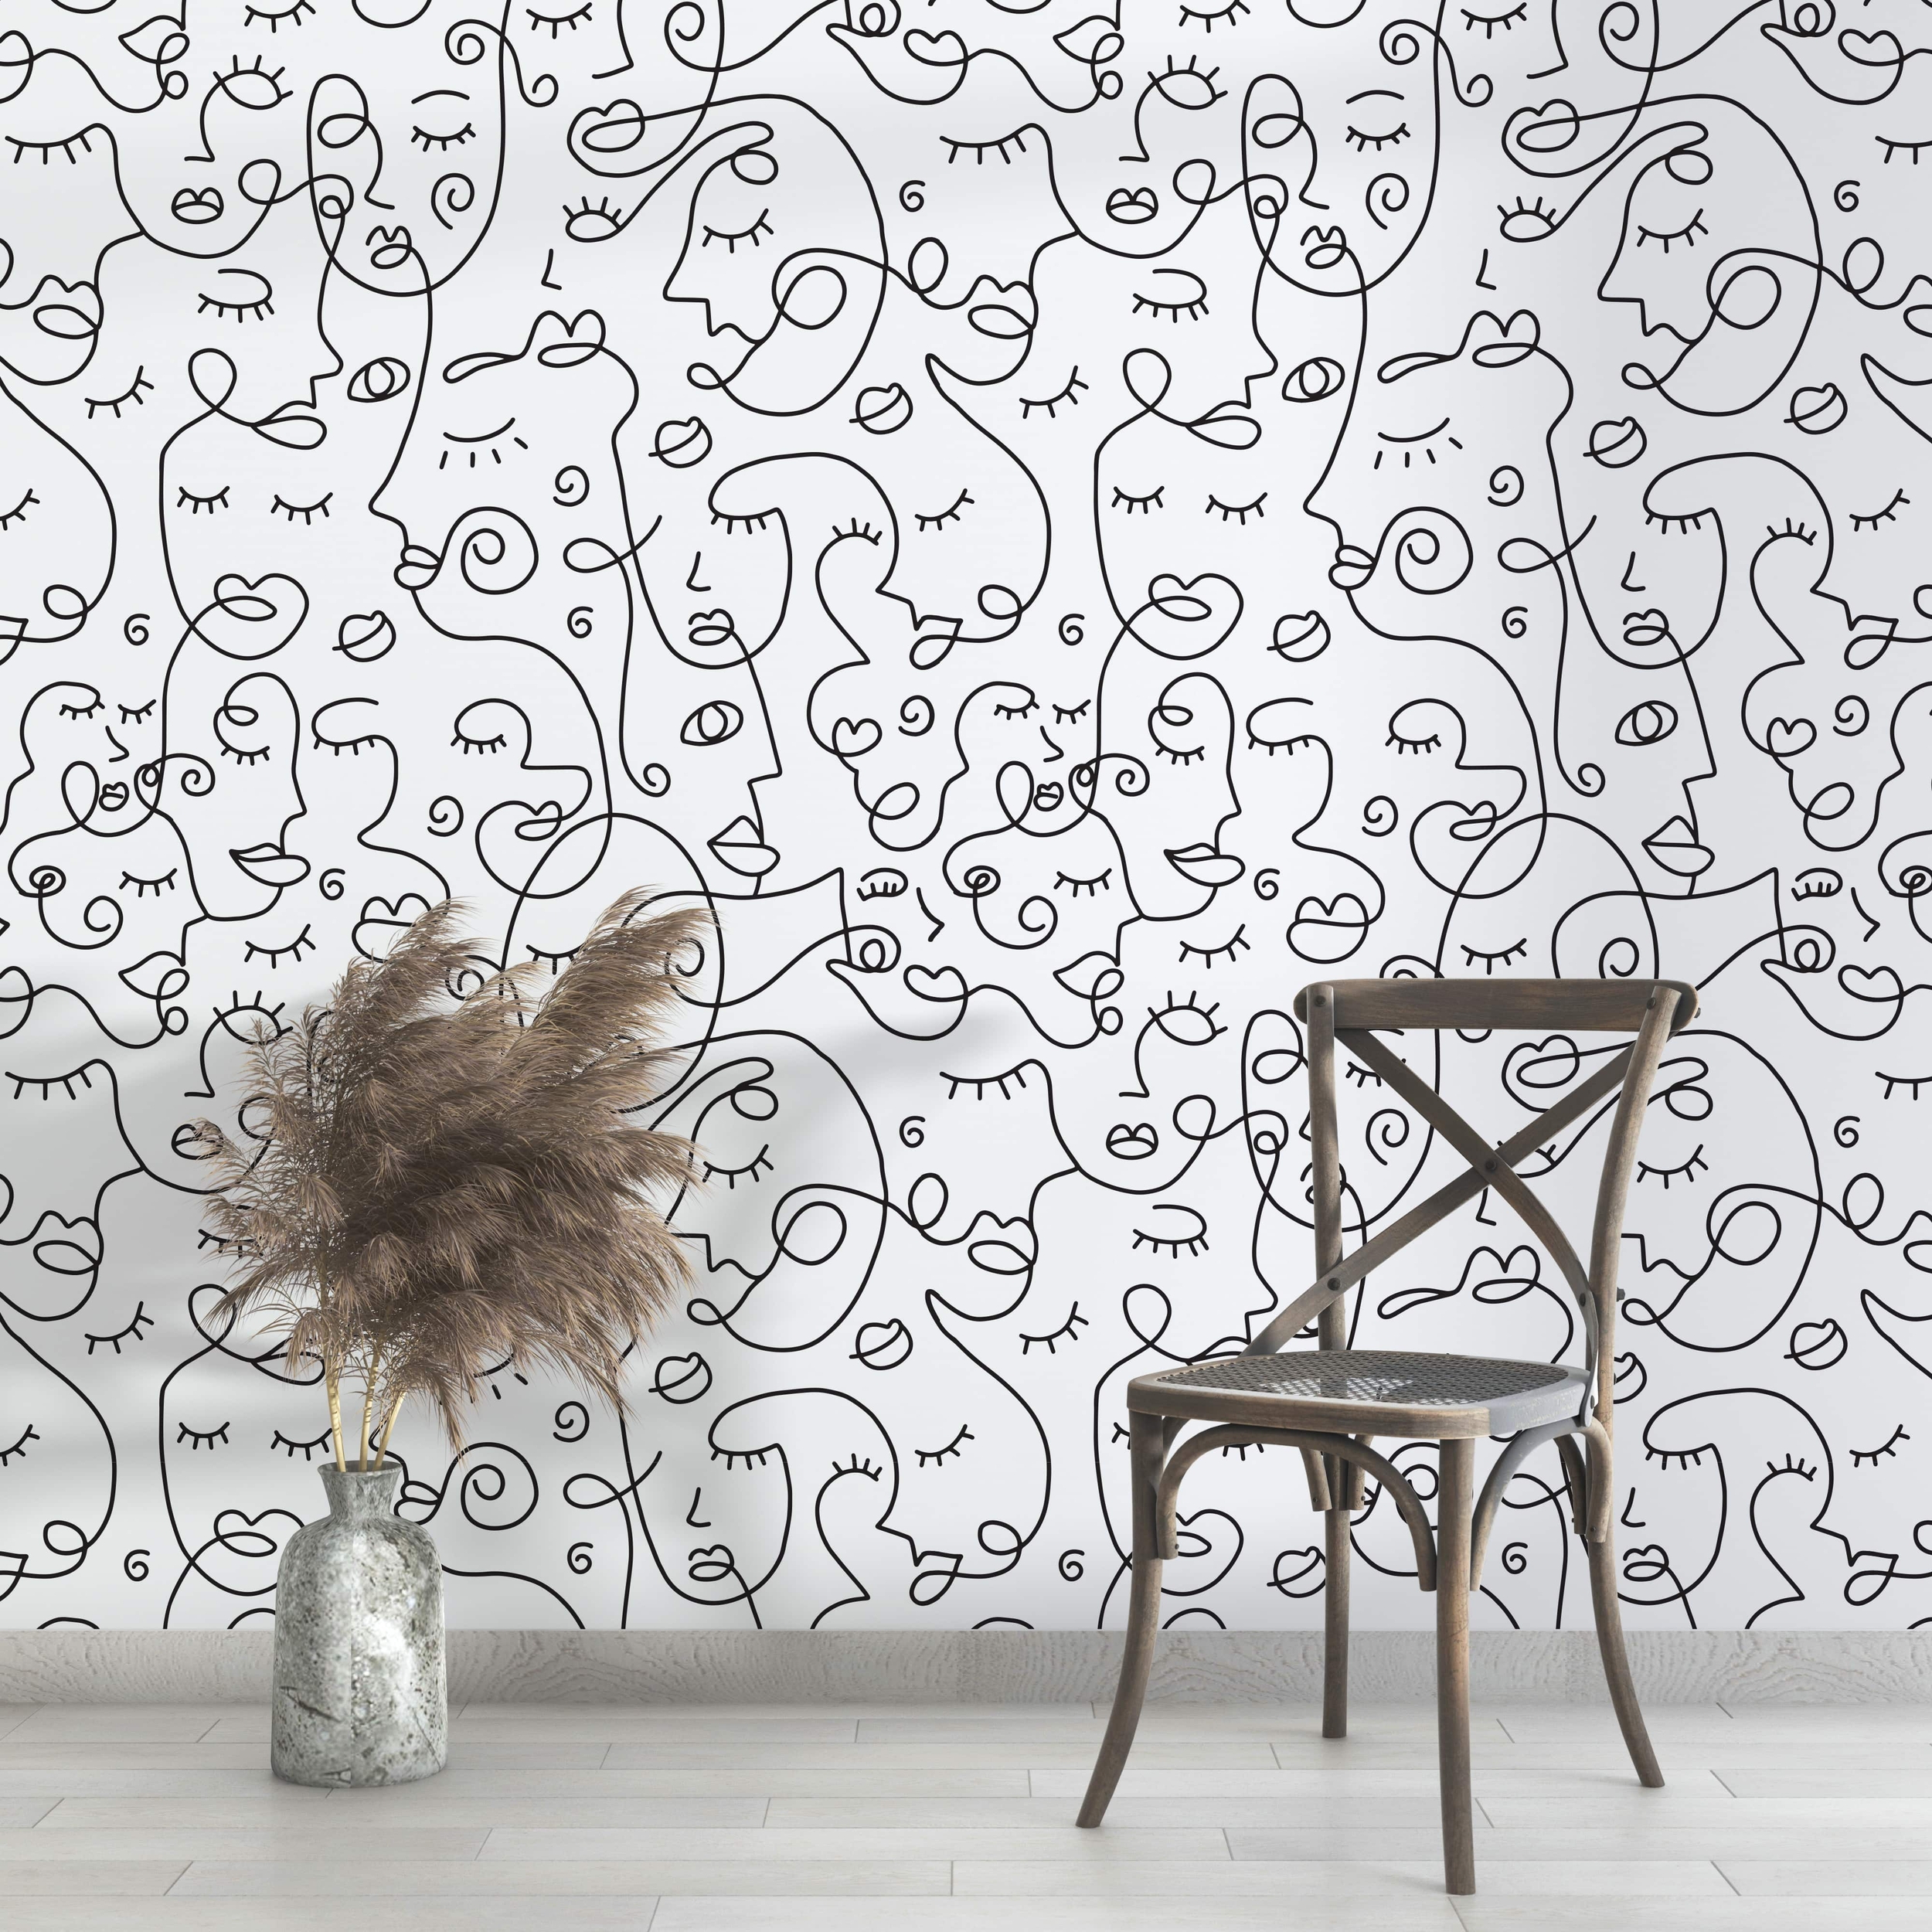 PP102-mur-papier-peint-adhesif-decoratif-revetement-vinyle-motifs-visage-au-fil-de-fer-noir-et-blanc-renovation-meuble-mur-min